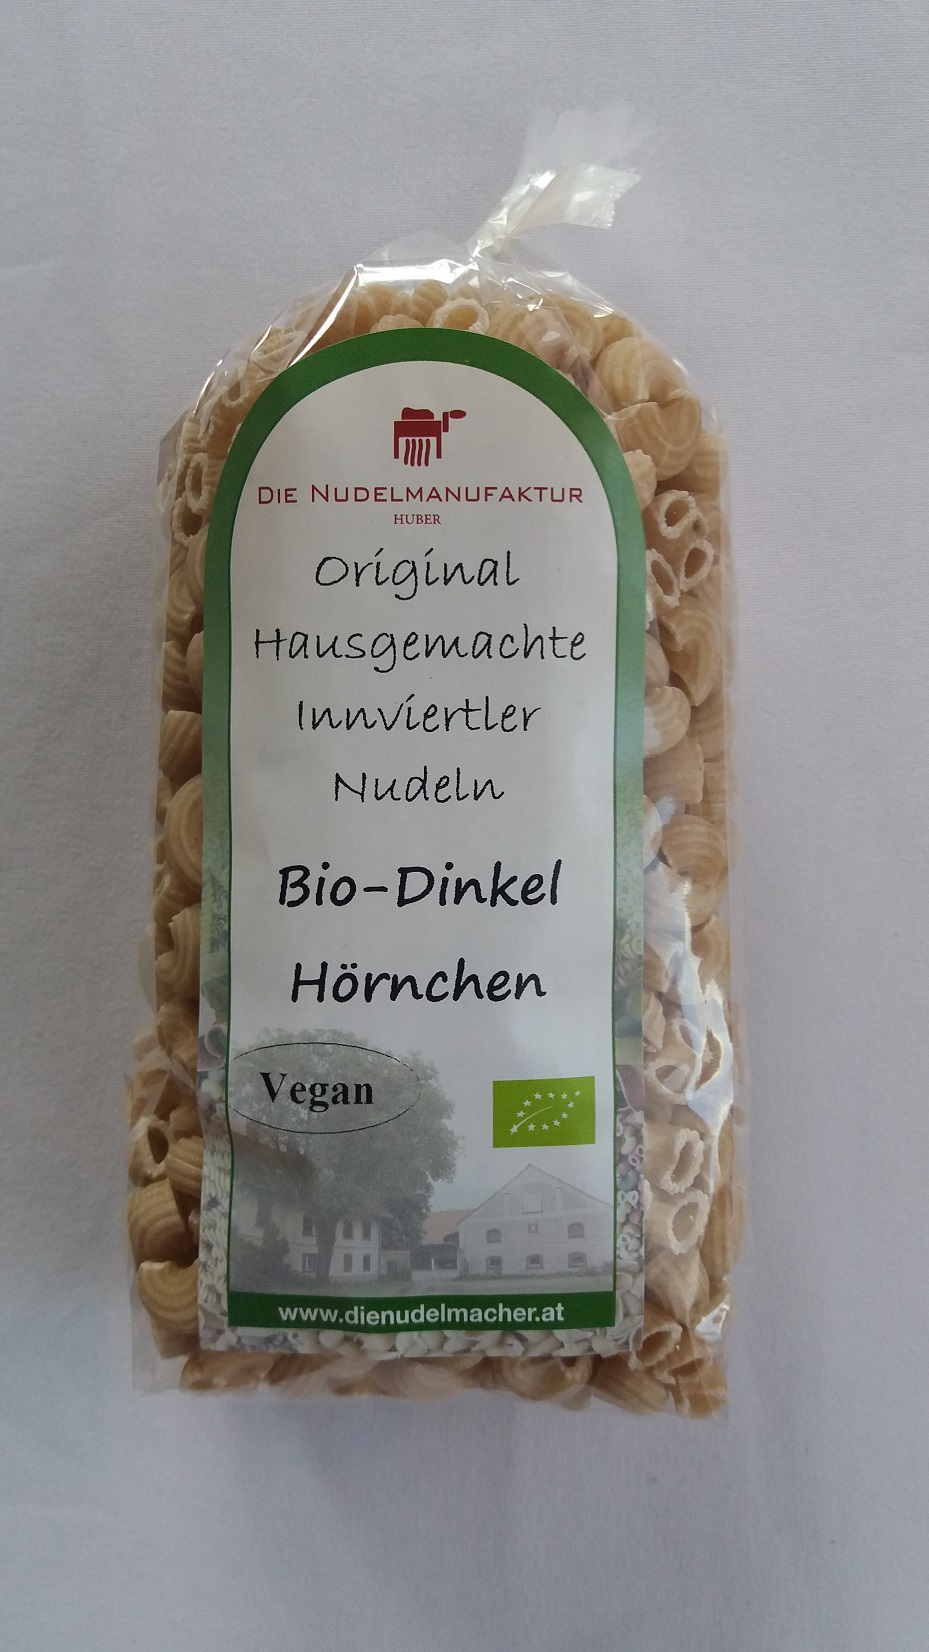 Bio-Dinkel Hörnchen ohne Ei 300g | Nudelmanufaktur Huber in Diersbach